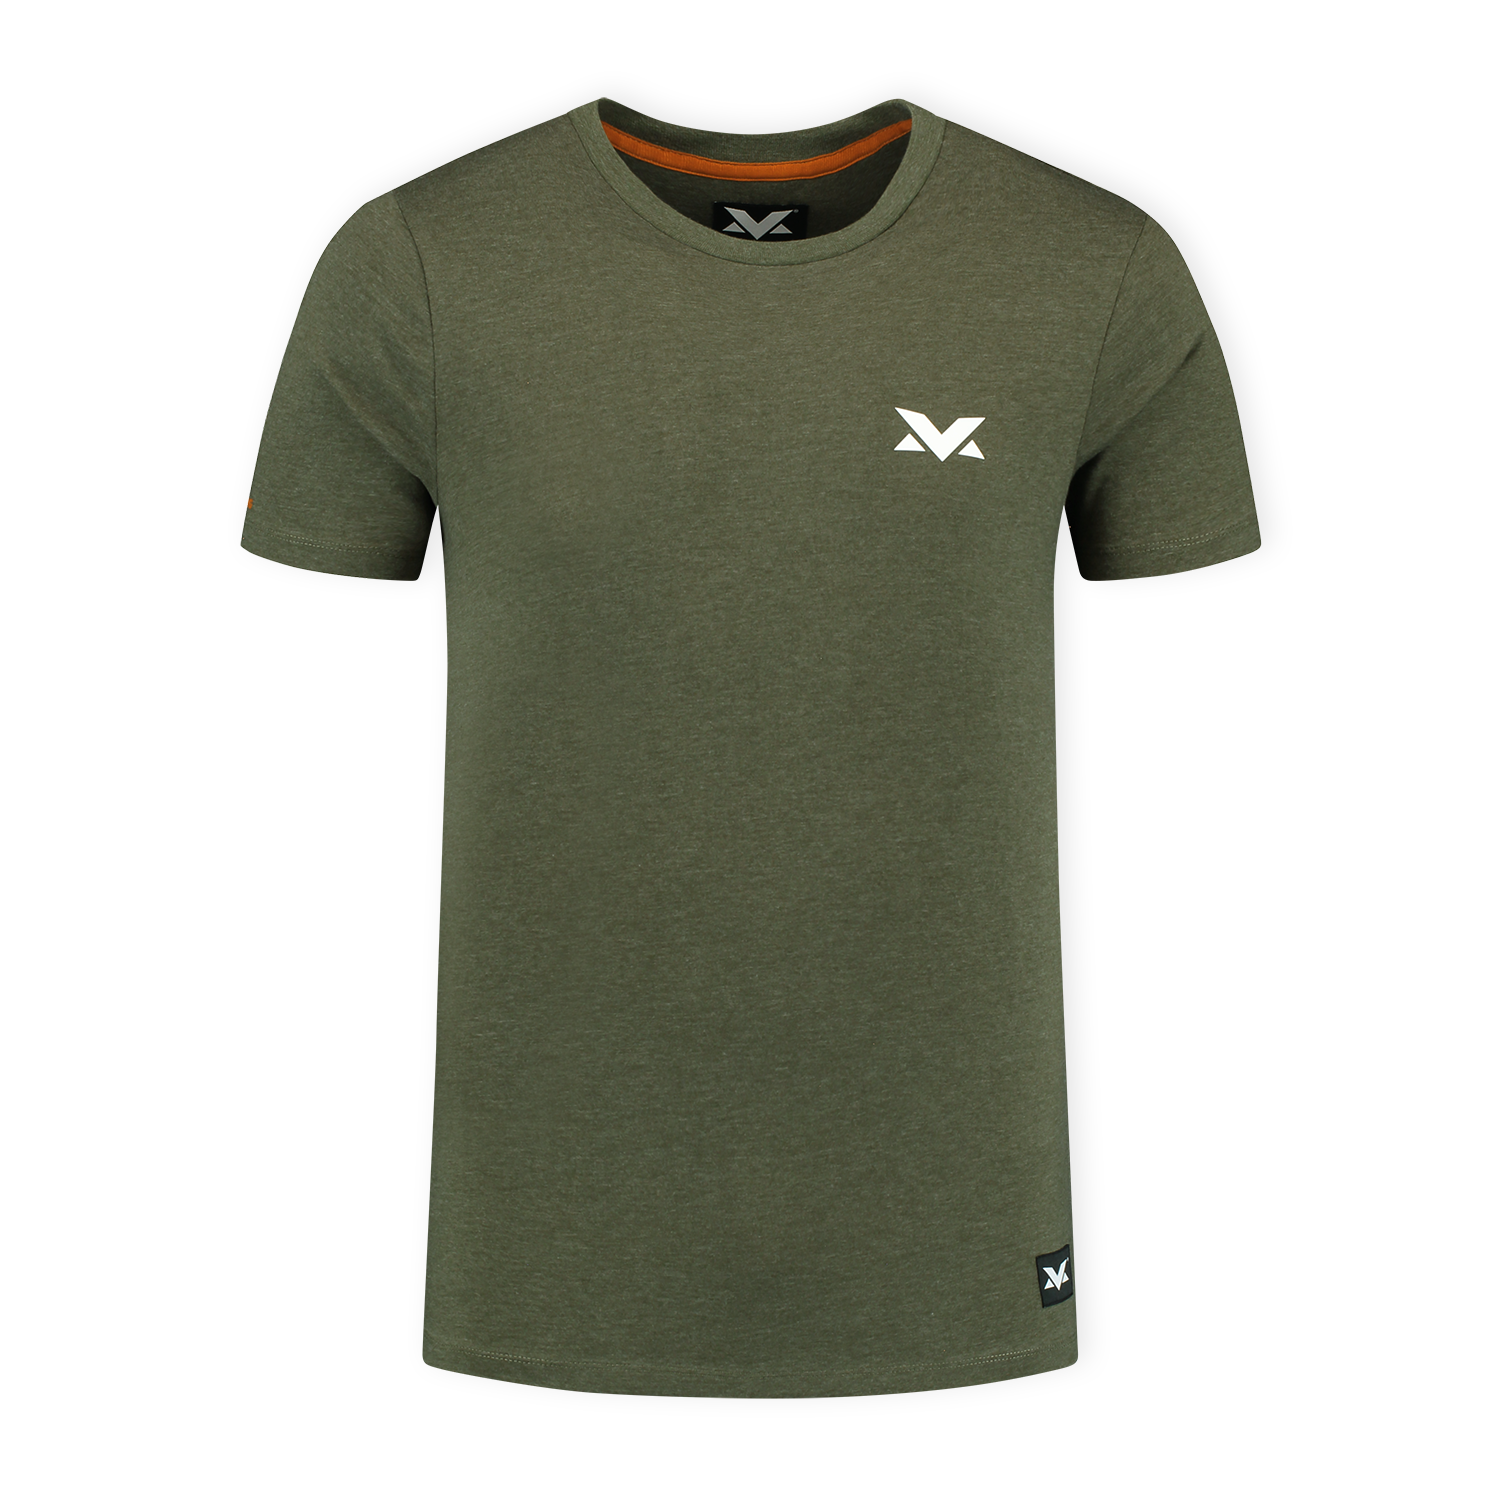 MV T-shirt The Limits - Groen - XL - Max Verstappen